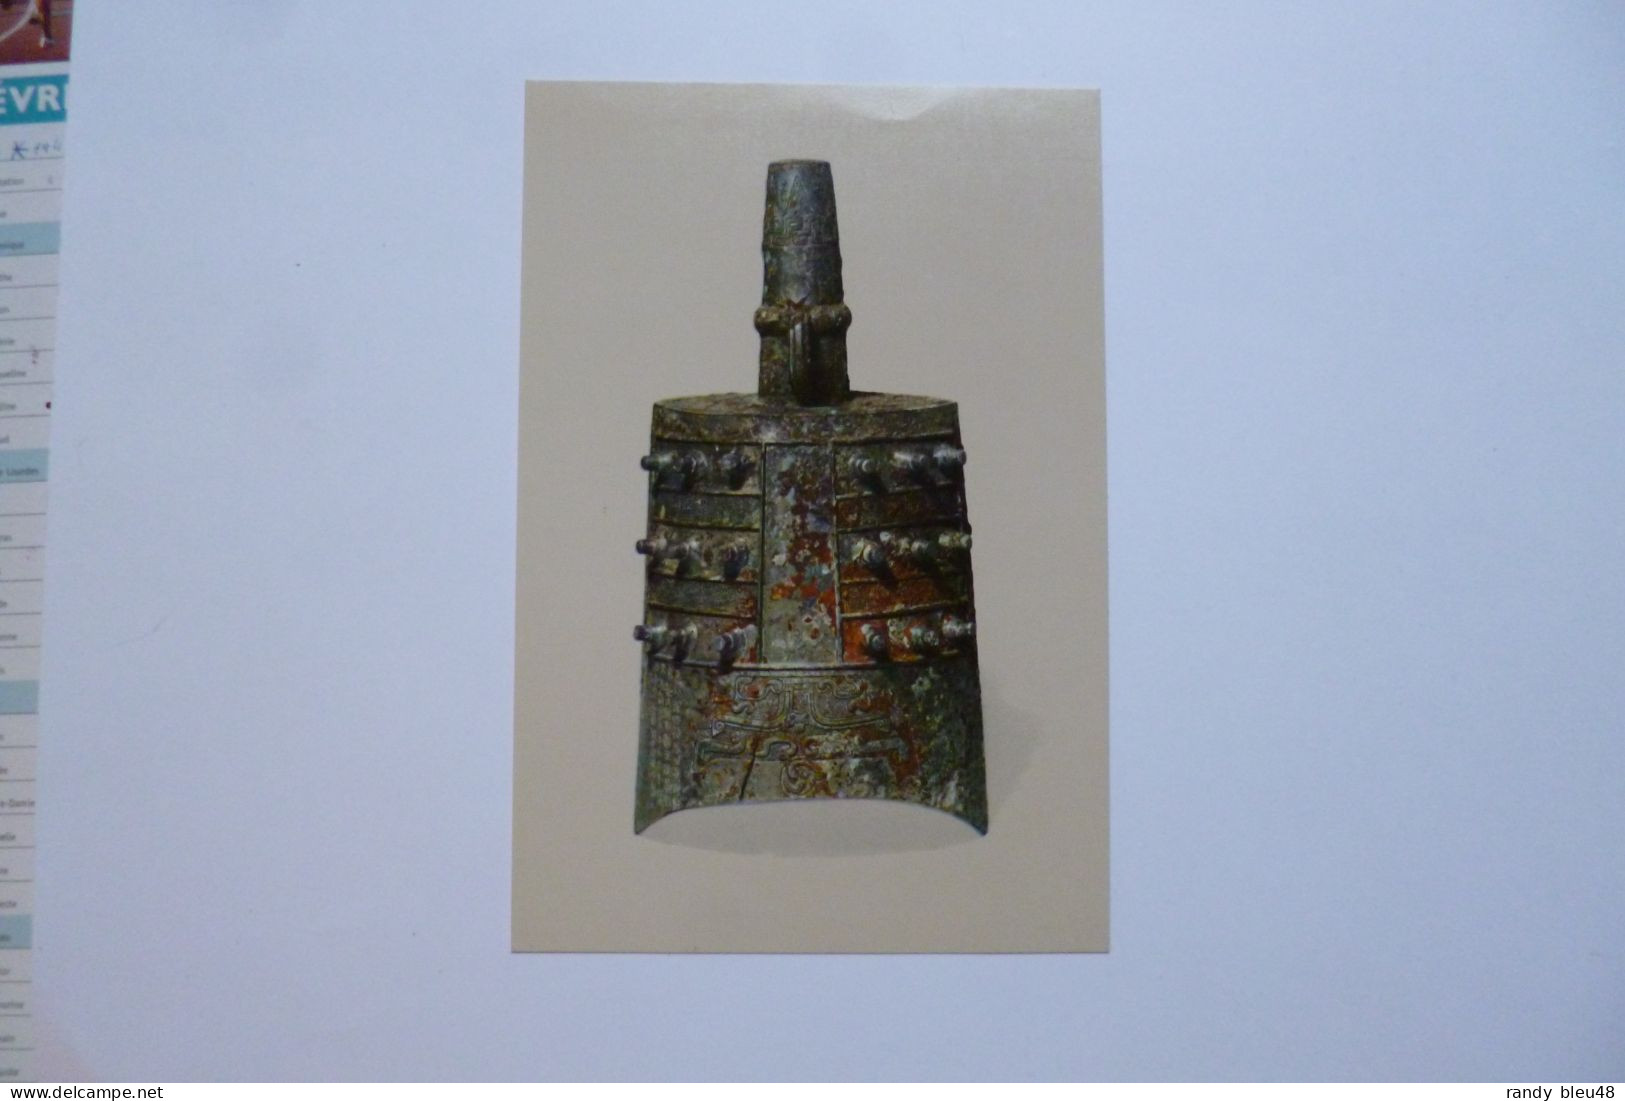 CHANGHAI  Muséum  -  Bronze Bell ( Musical Instrument Marked Liu  )   -  CHINE  -  CHINA - China